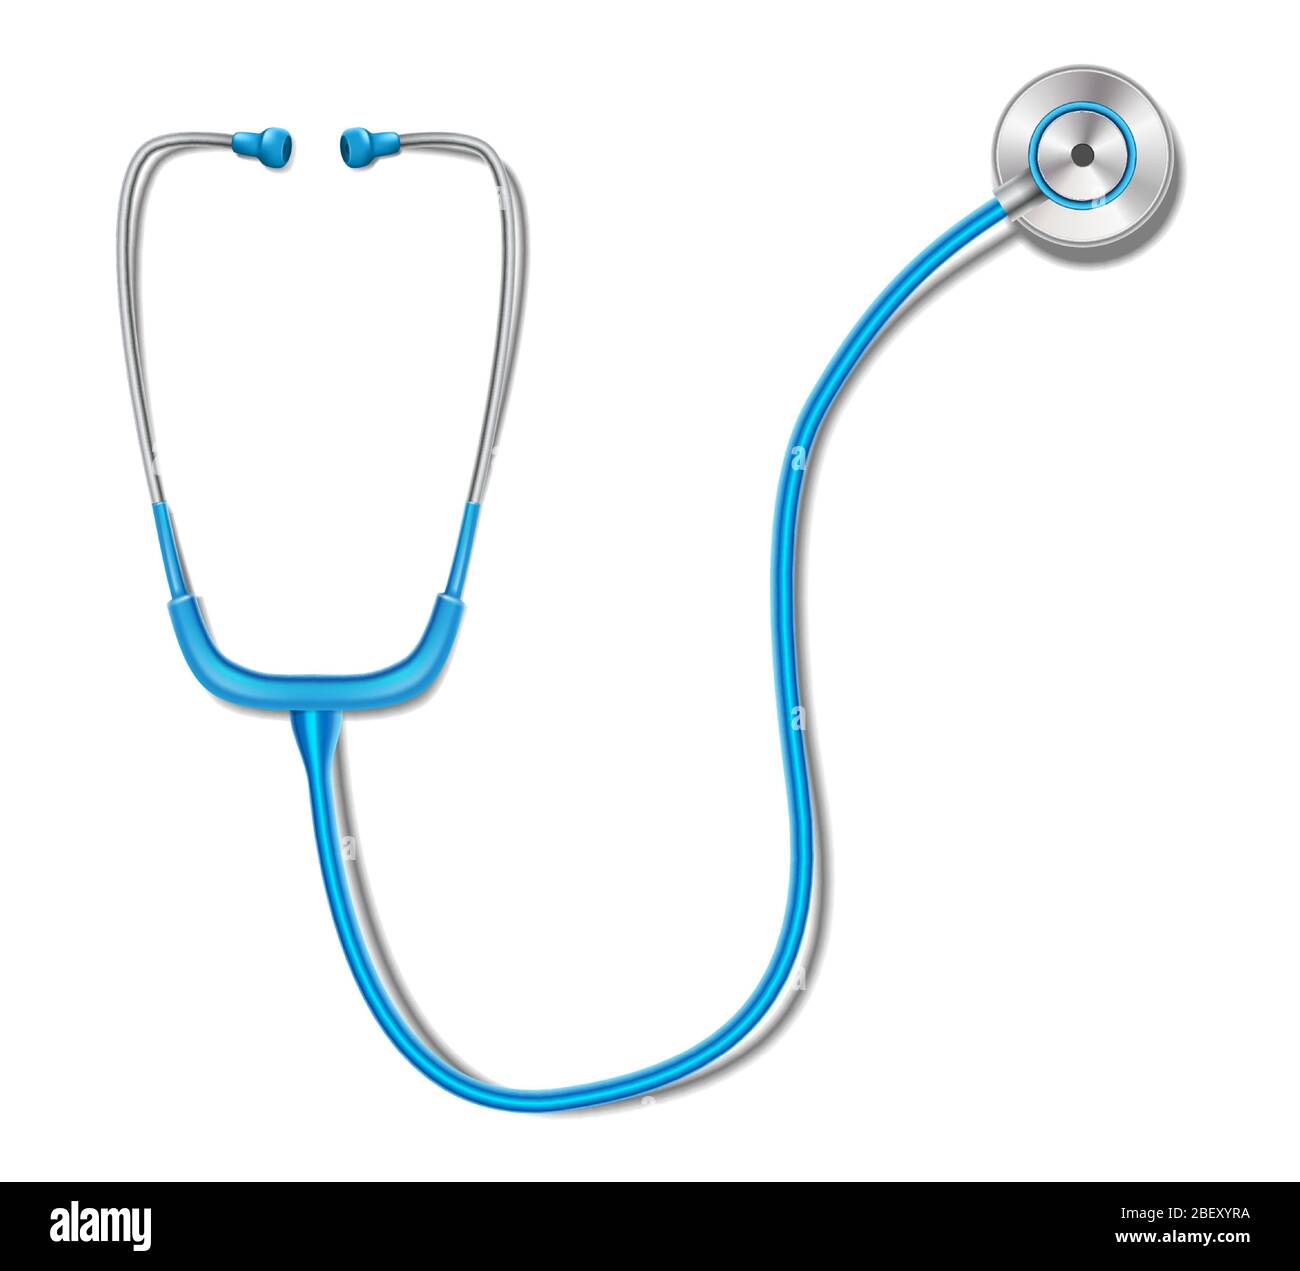 Concetto di assistenza sanitaria con stetoscopio blu mockup isolato. Attrezzatura di medicina realistica dello stetoscopio per la diagnosi di salute. Illustrazione vettoriale Illustrazione Vettoriale